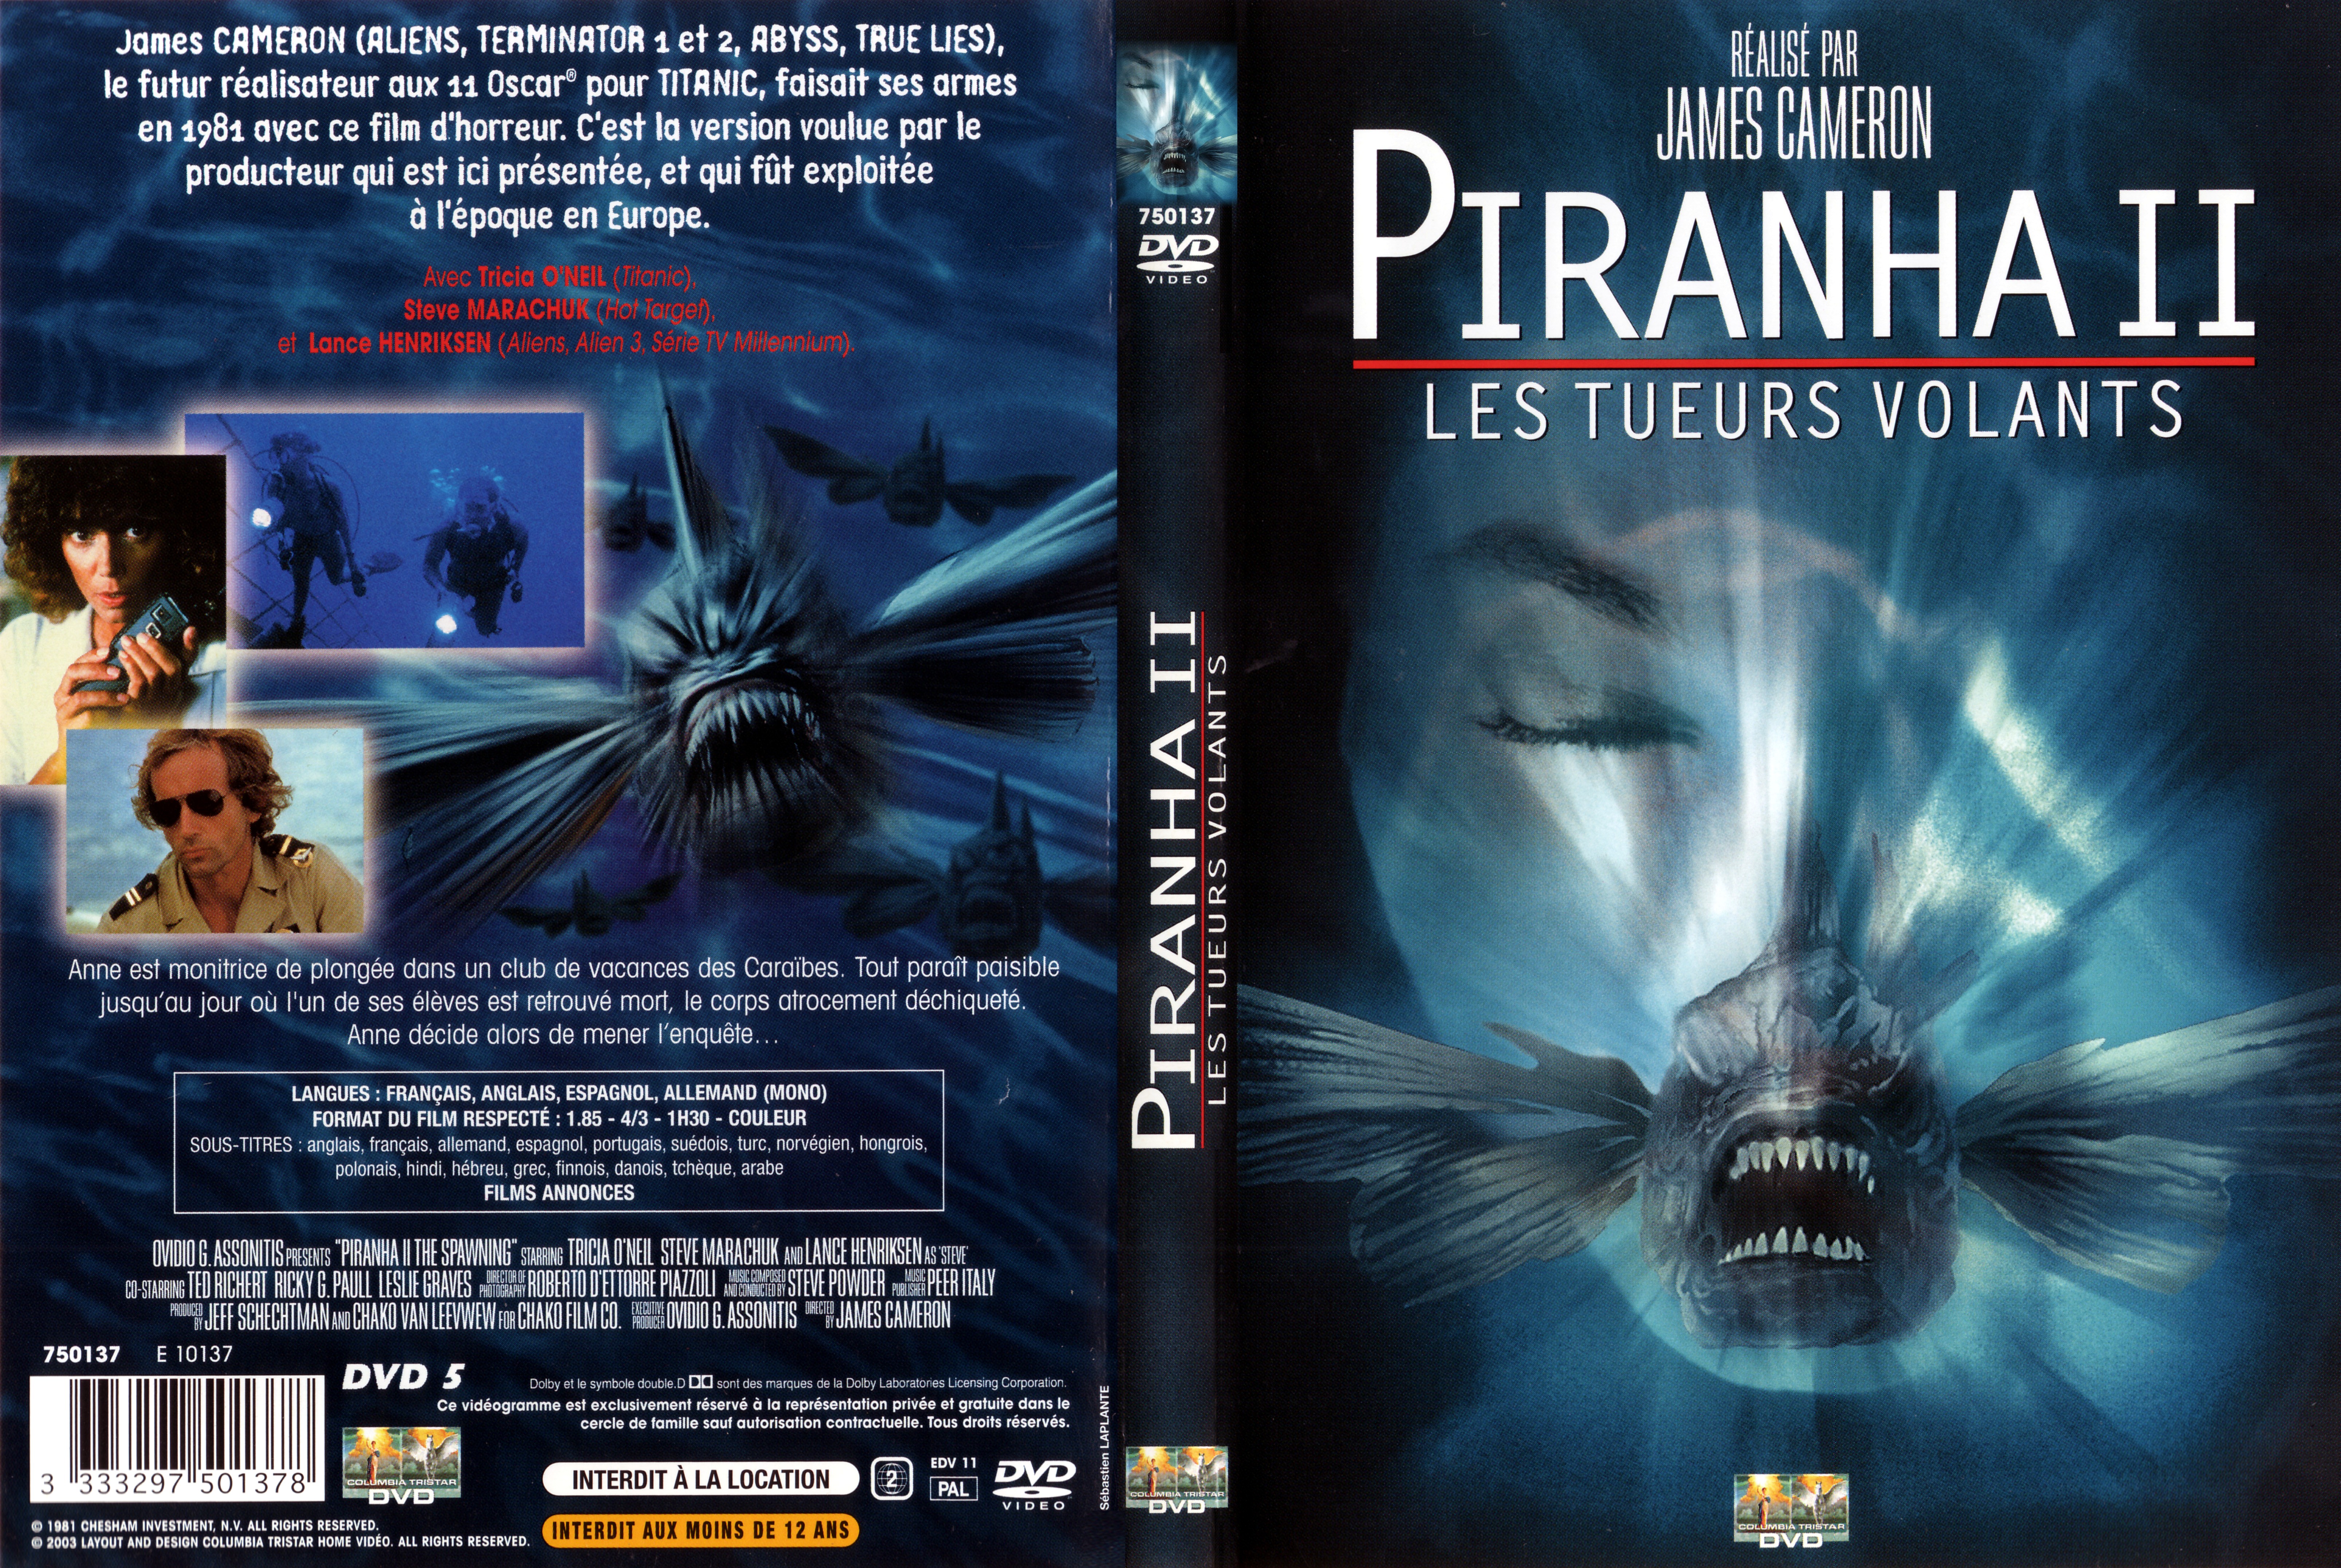 Jaquette DVD Piranha 2 Les Tueurs volants